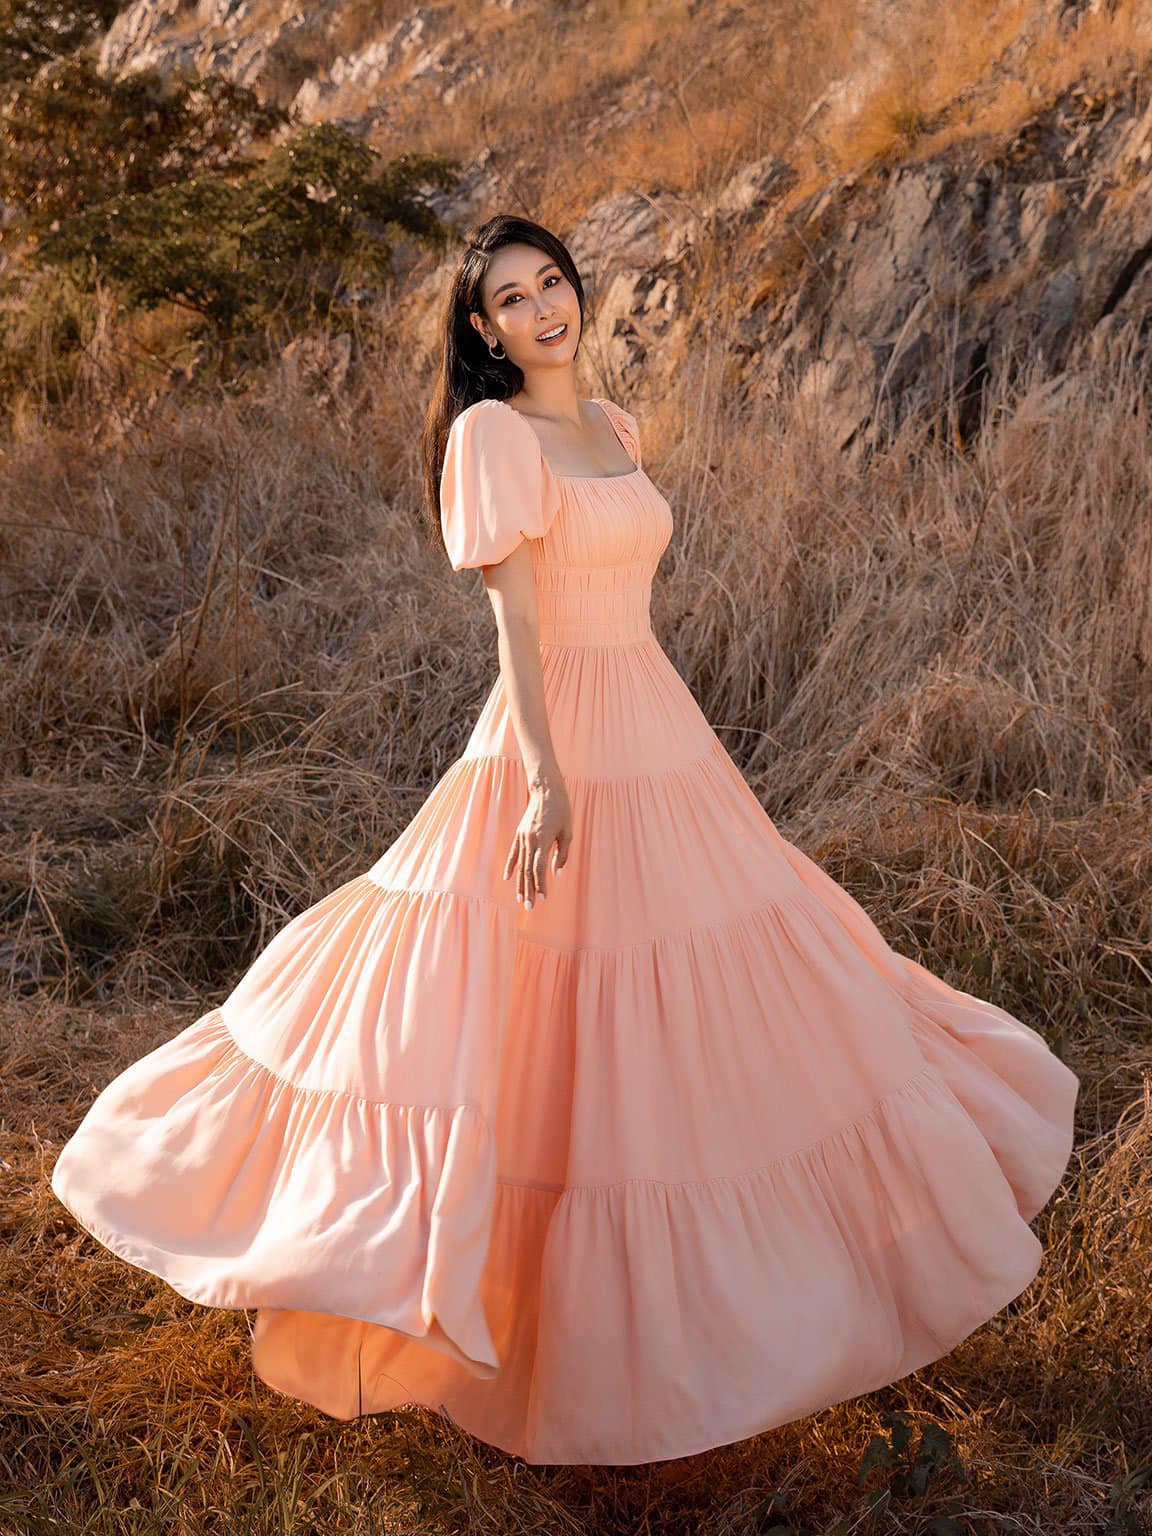 Giải trí - Hoa hậu Hà Kiều Anh xin lỗi về ồn ào nhận là “công chúa đời thứ 7 nhà Nguyễn”